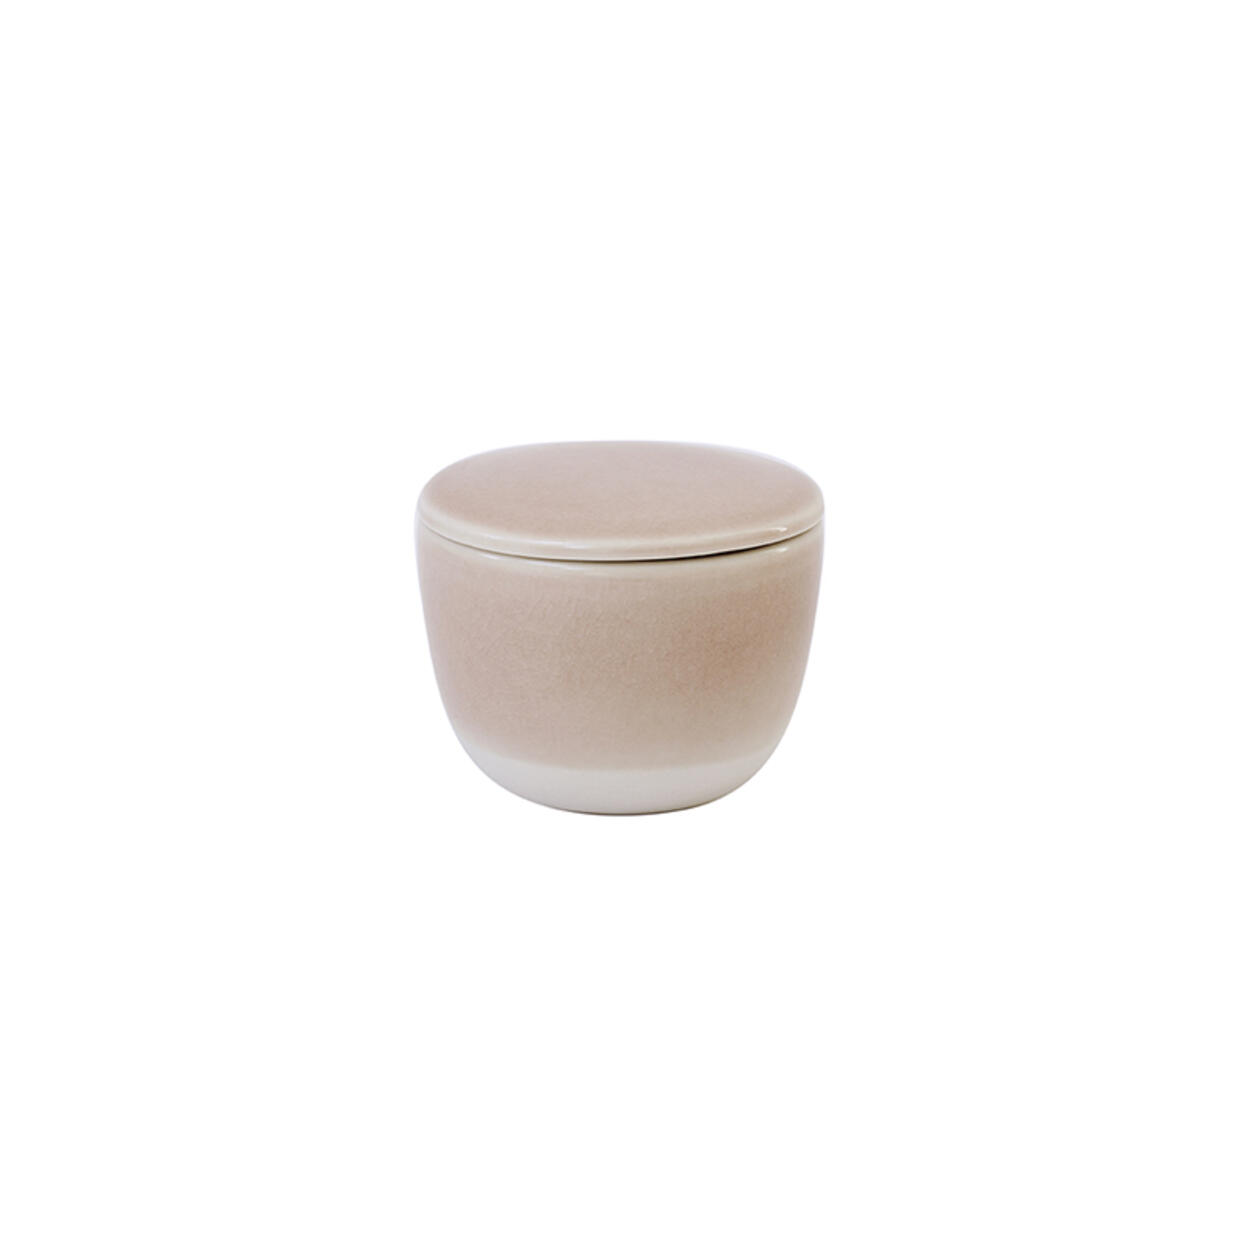 Sugar bowl Maguelone tamaris ceramic tableware